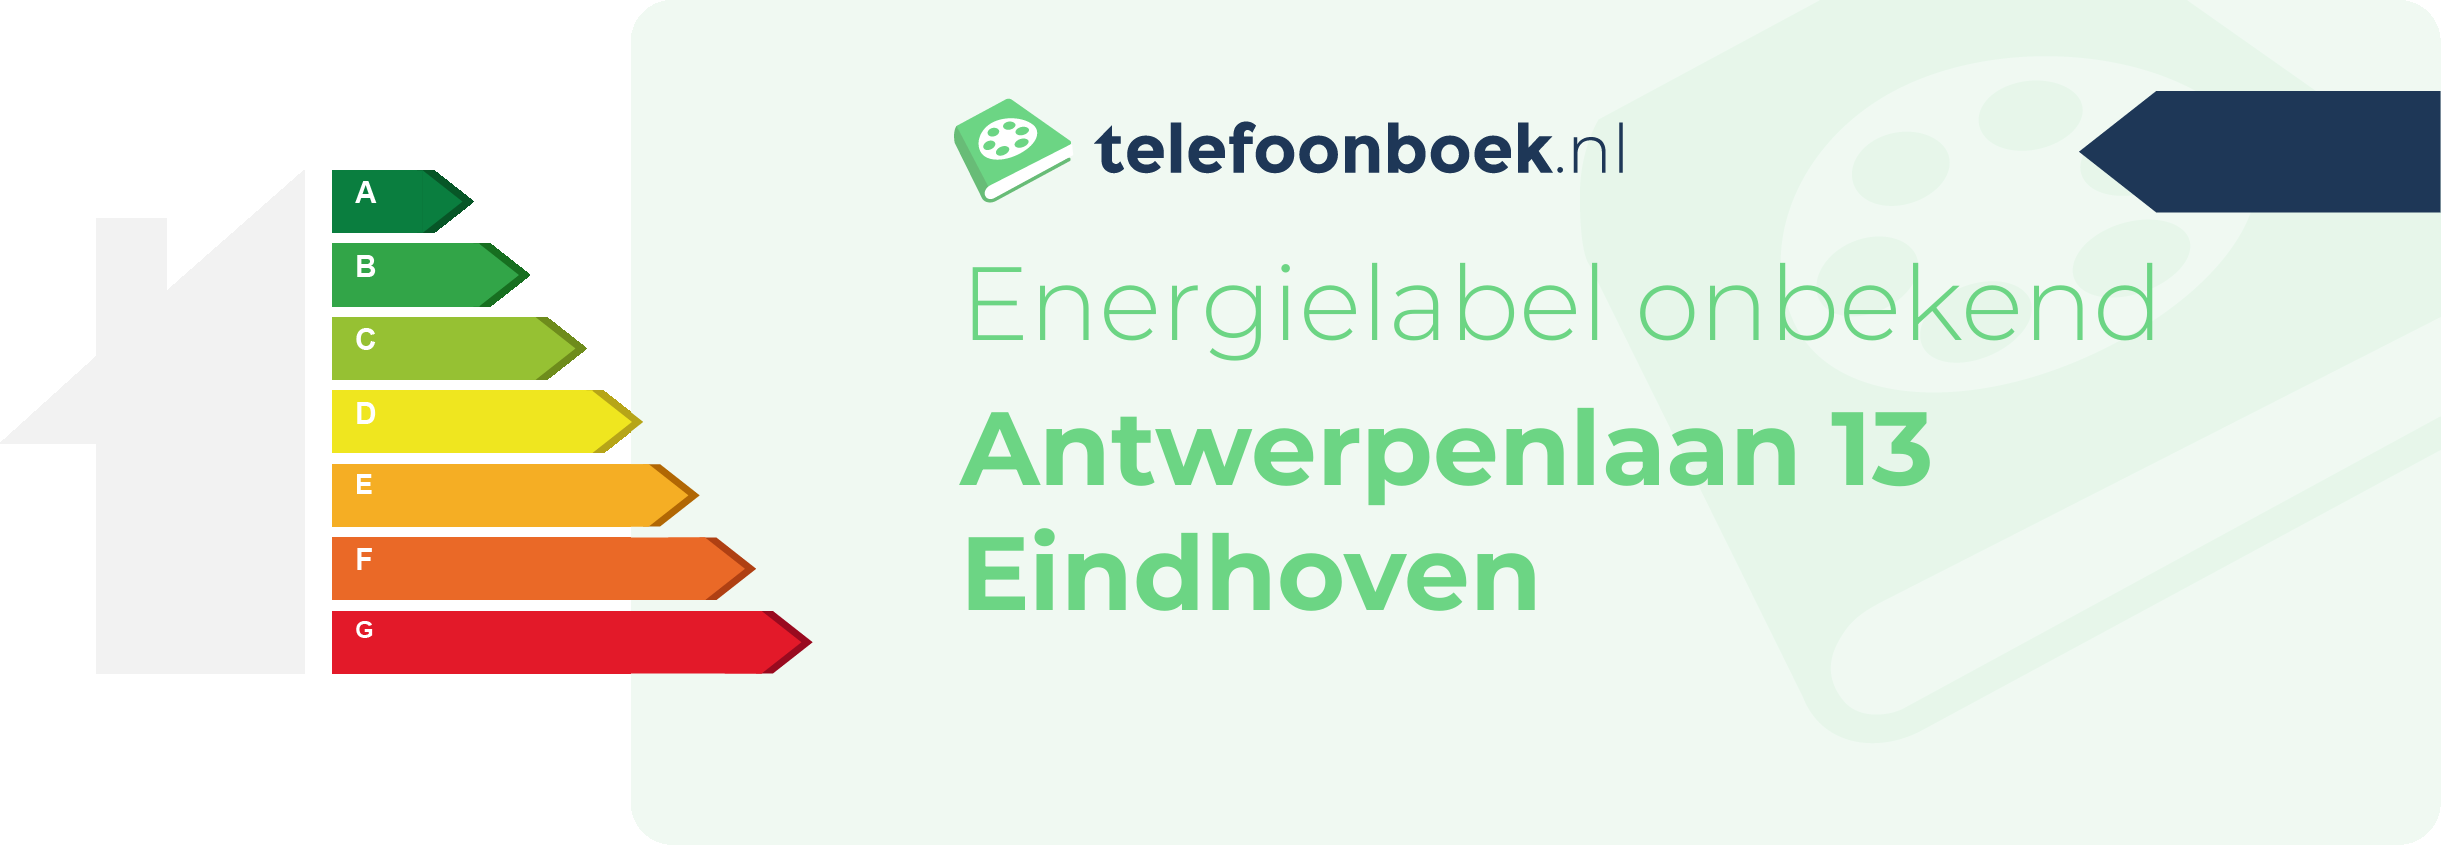 Energielabel Antwerpenlaan 13 Eindhoven